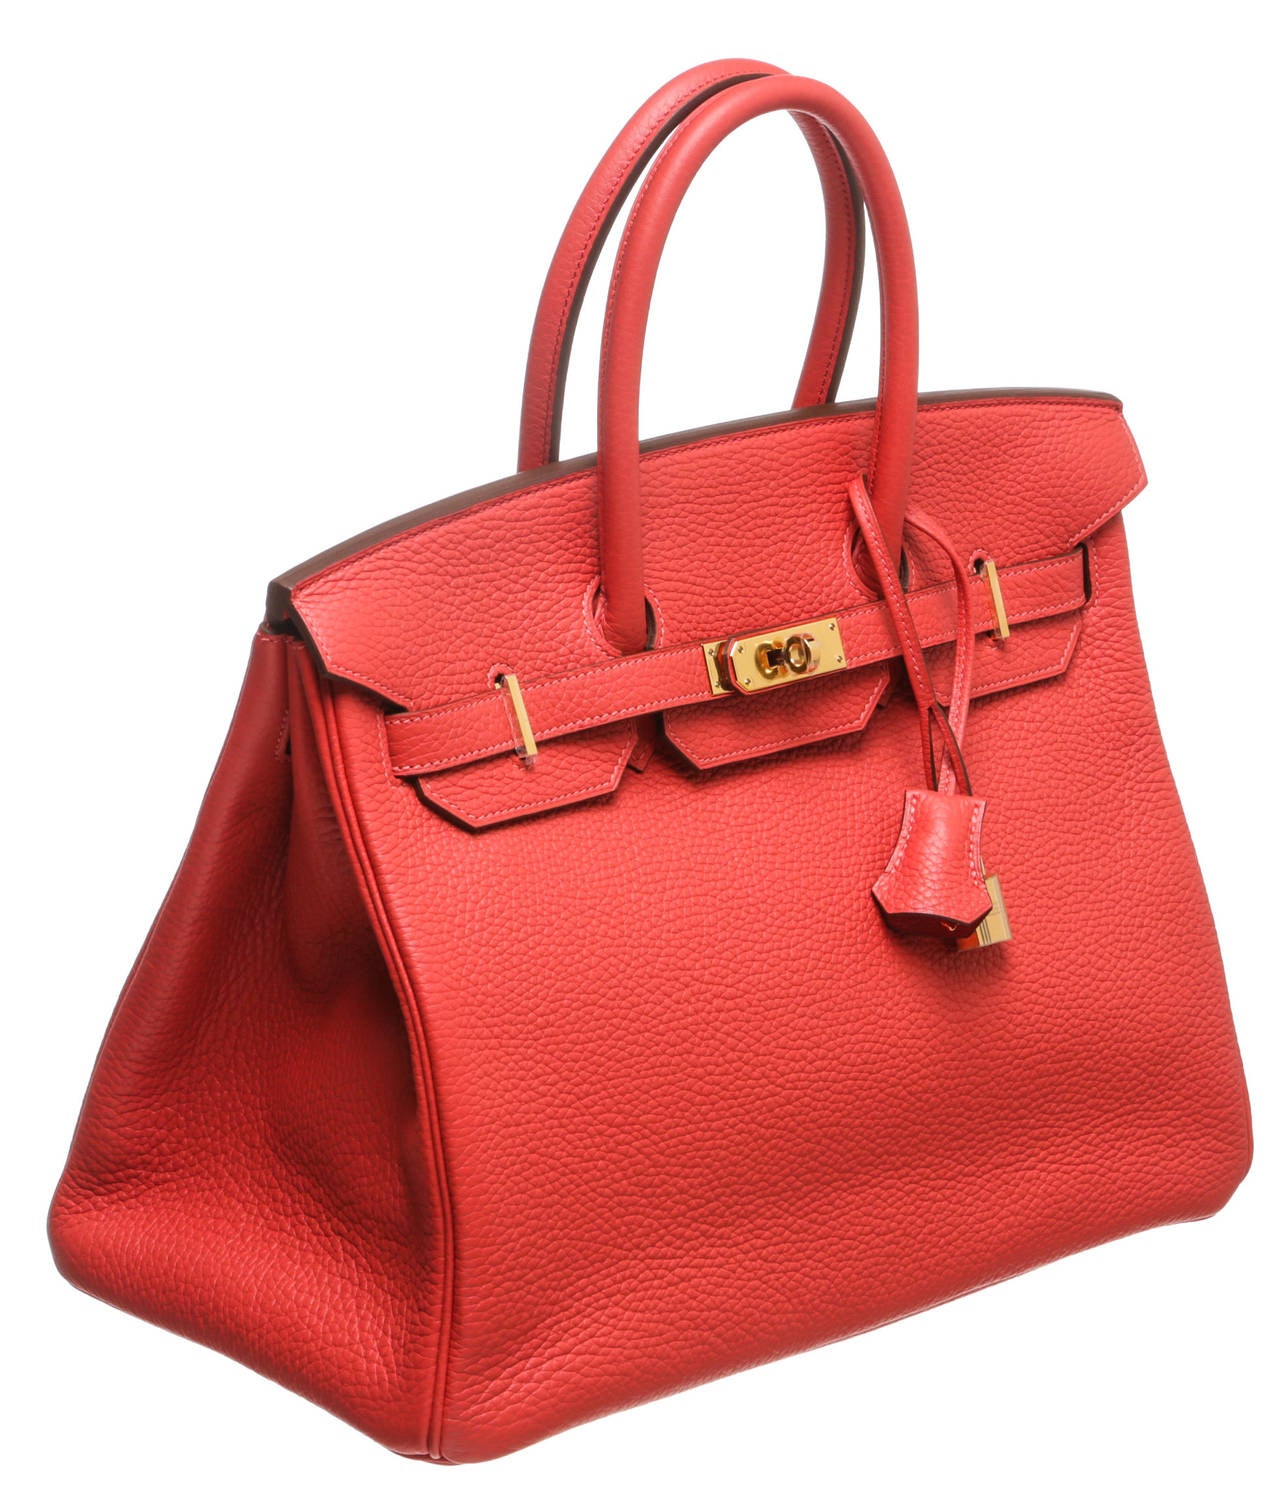 Hermes Rouge Pivoine (Pink) Togo Leather 35cm Birkin Handbag NEW ...  